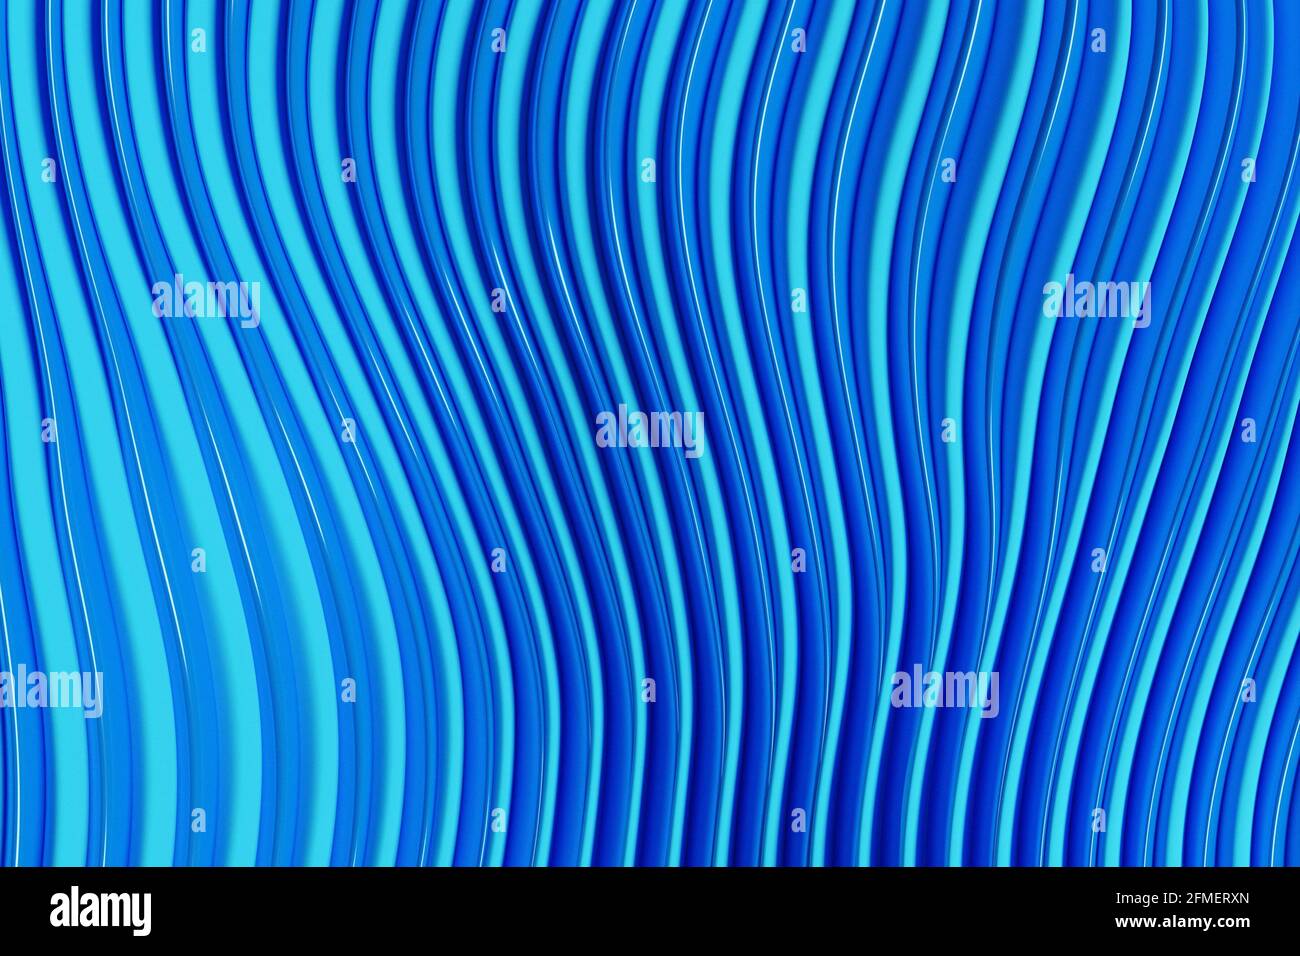 3d-Darstellung von blau leuchtenden Farblinien. Equalizer für musikalische Linien. Hintergrund der Technologiegeometrie. Stockfoto